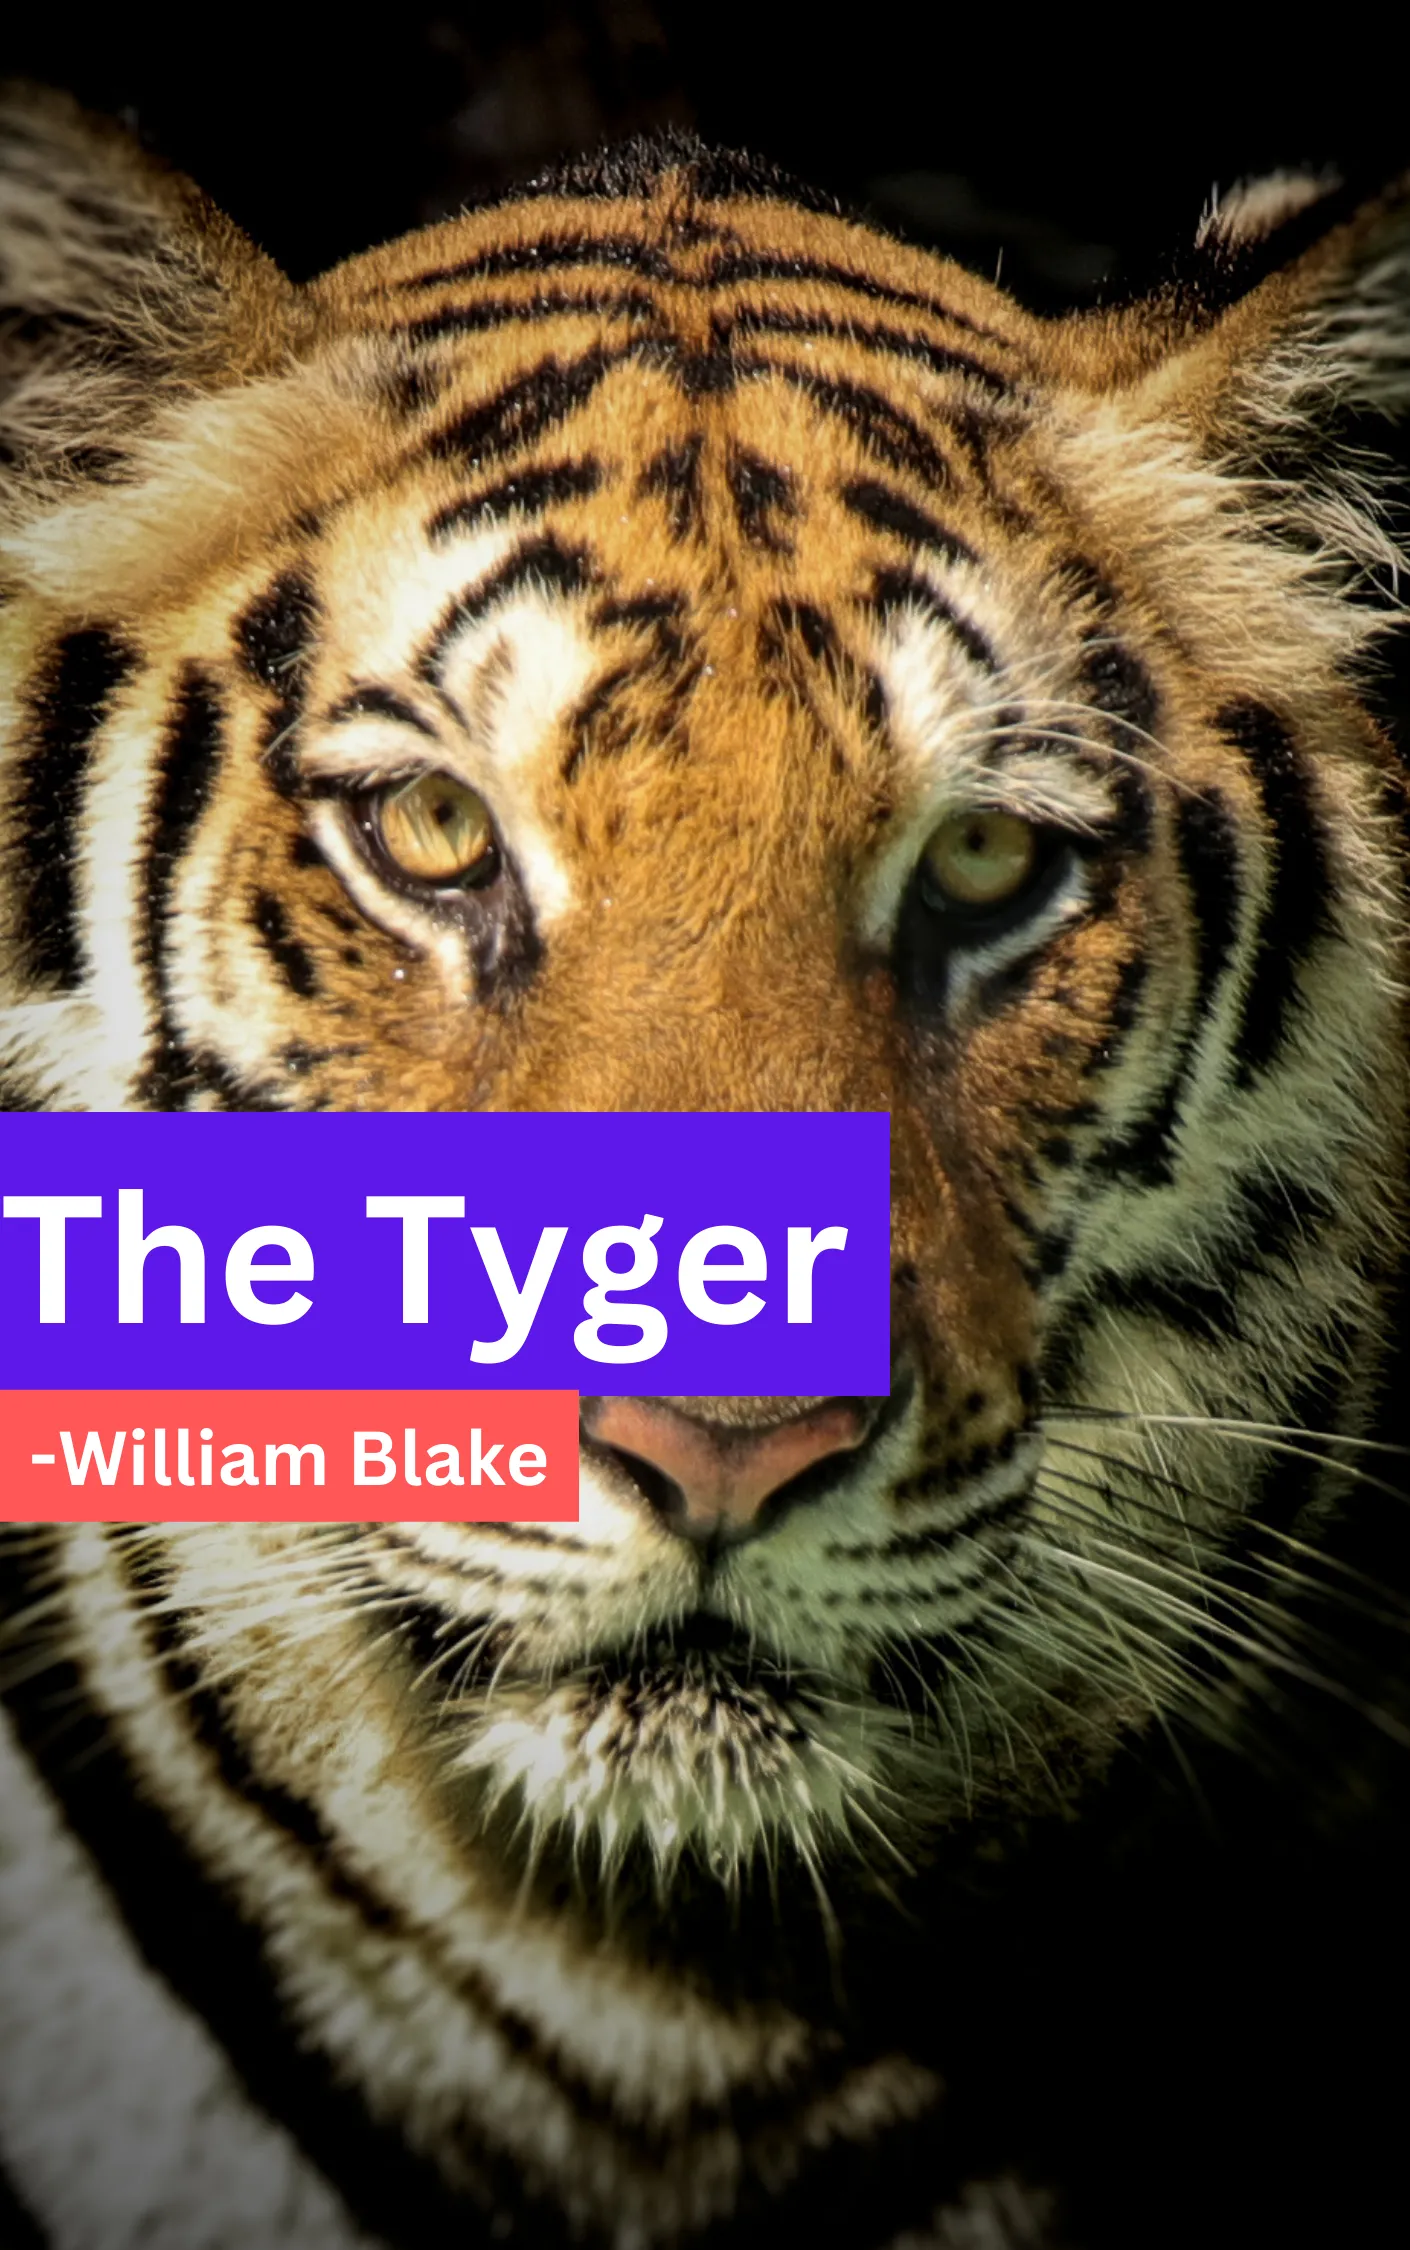 The Tyger Summary & Analysis